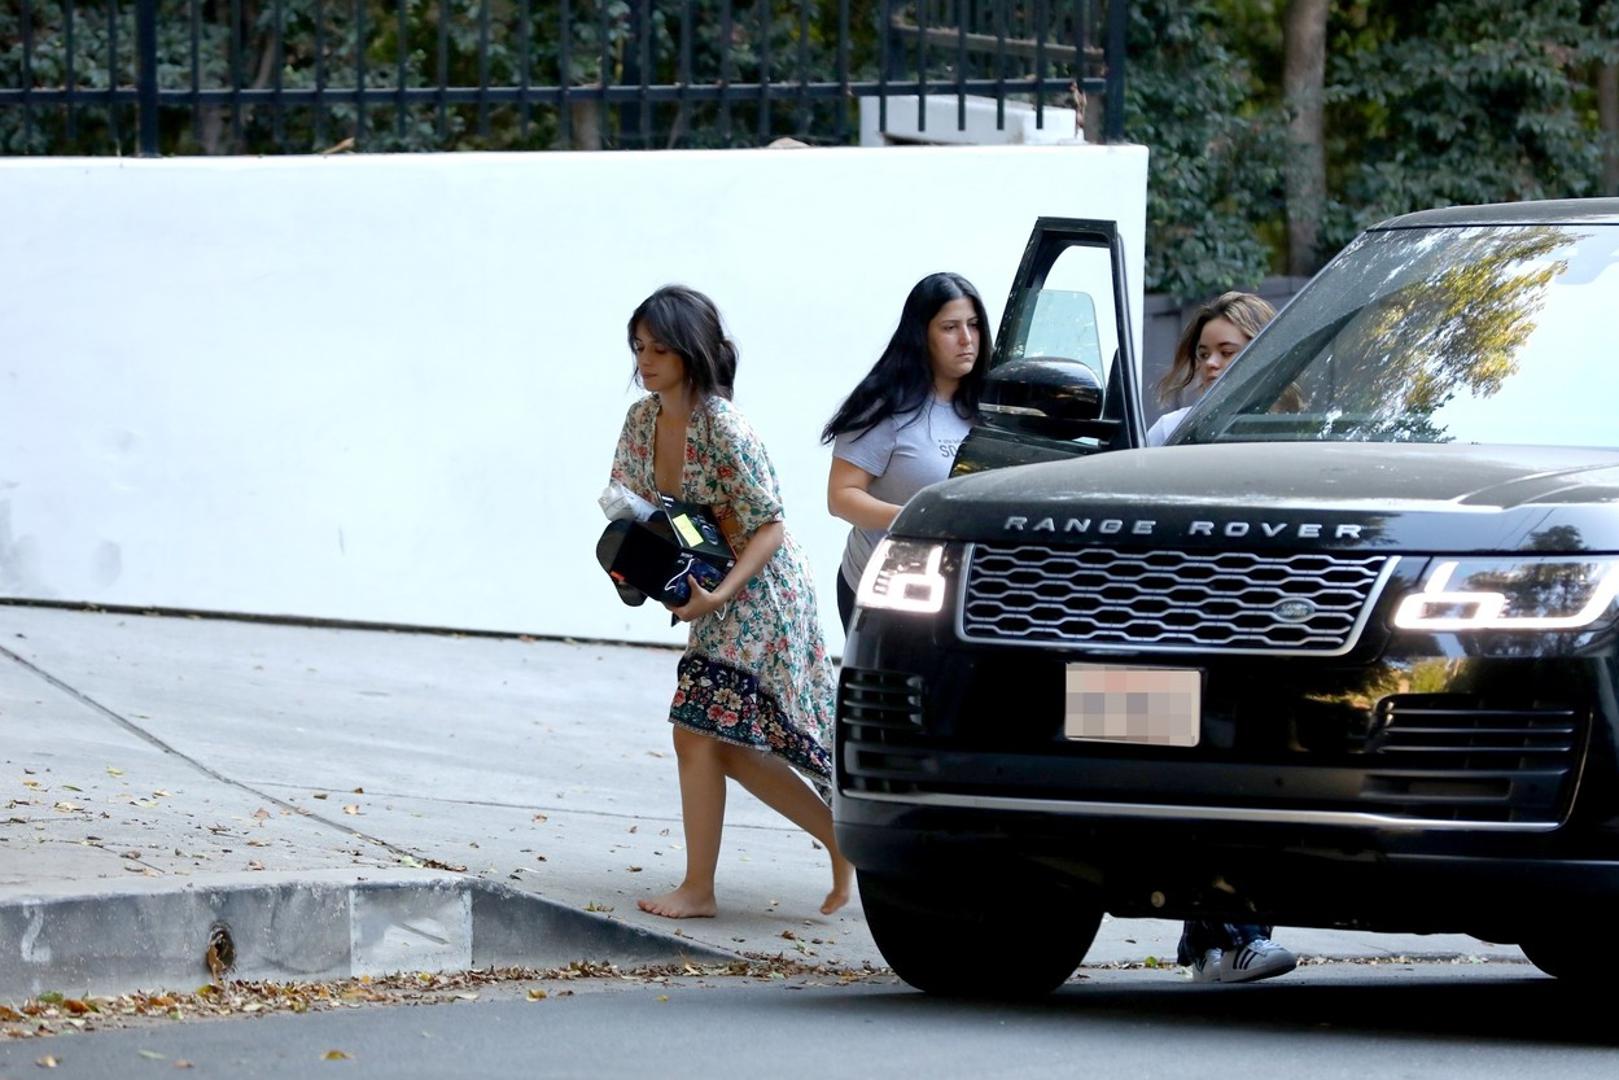 Slavna kubanska pjevačica Camila Cabello nakon što je u Londonu snimala mjuzikl "Pepeljuga" vratila se u Los Angeles kako bi se družila sa svojim dečkom, kanadskim pjevačem Shawnom Mendesom.